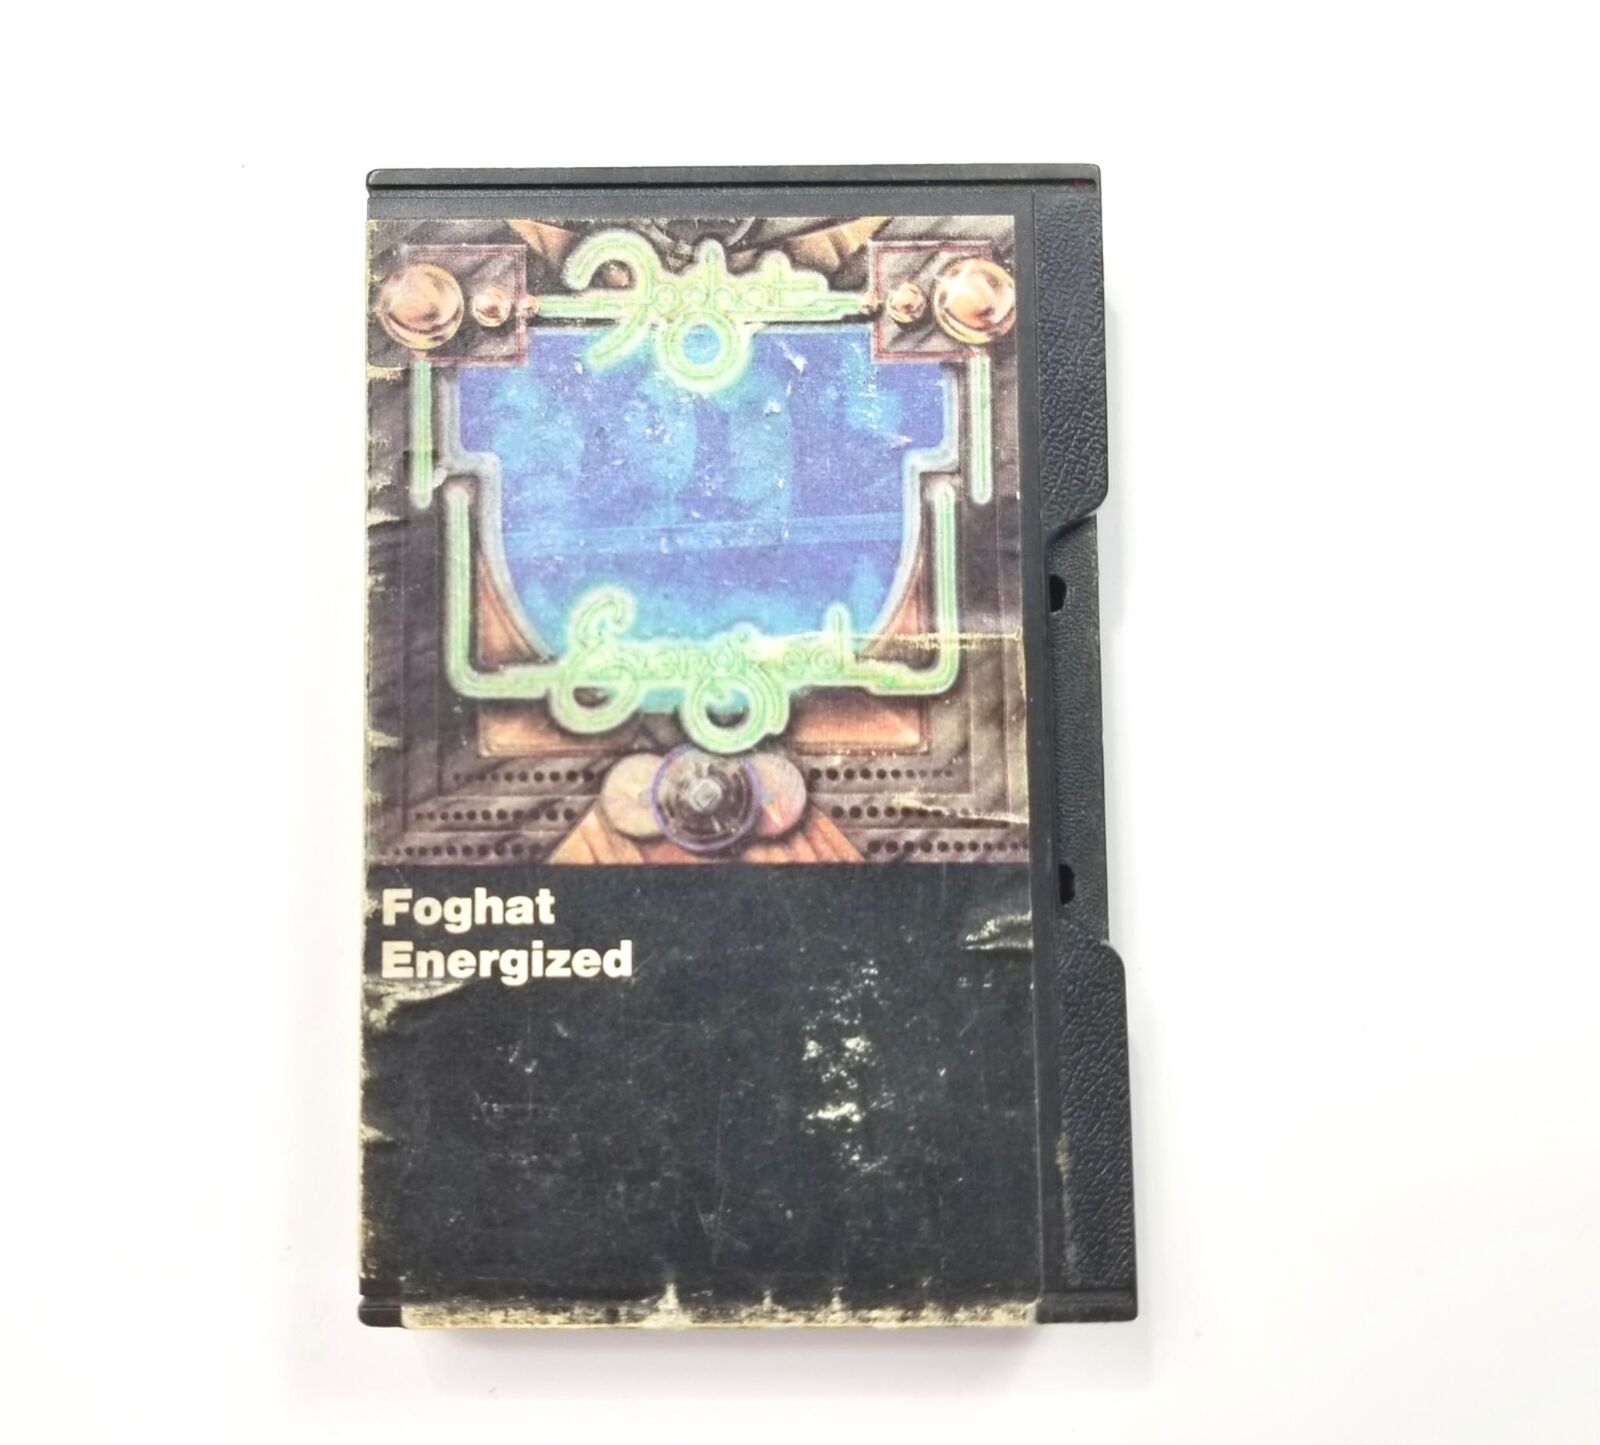 FOGHAT Energized M56950 Slip Case Cassette Tape Warner Bros, Rare, Tested.